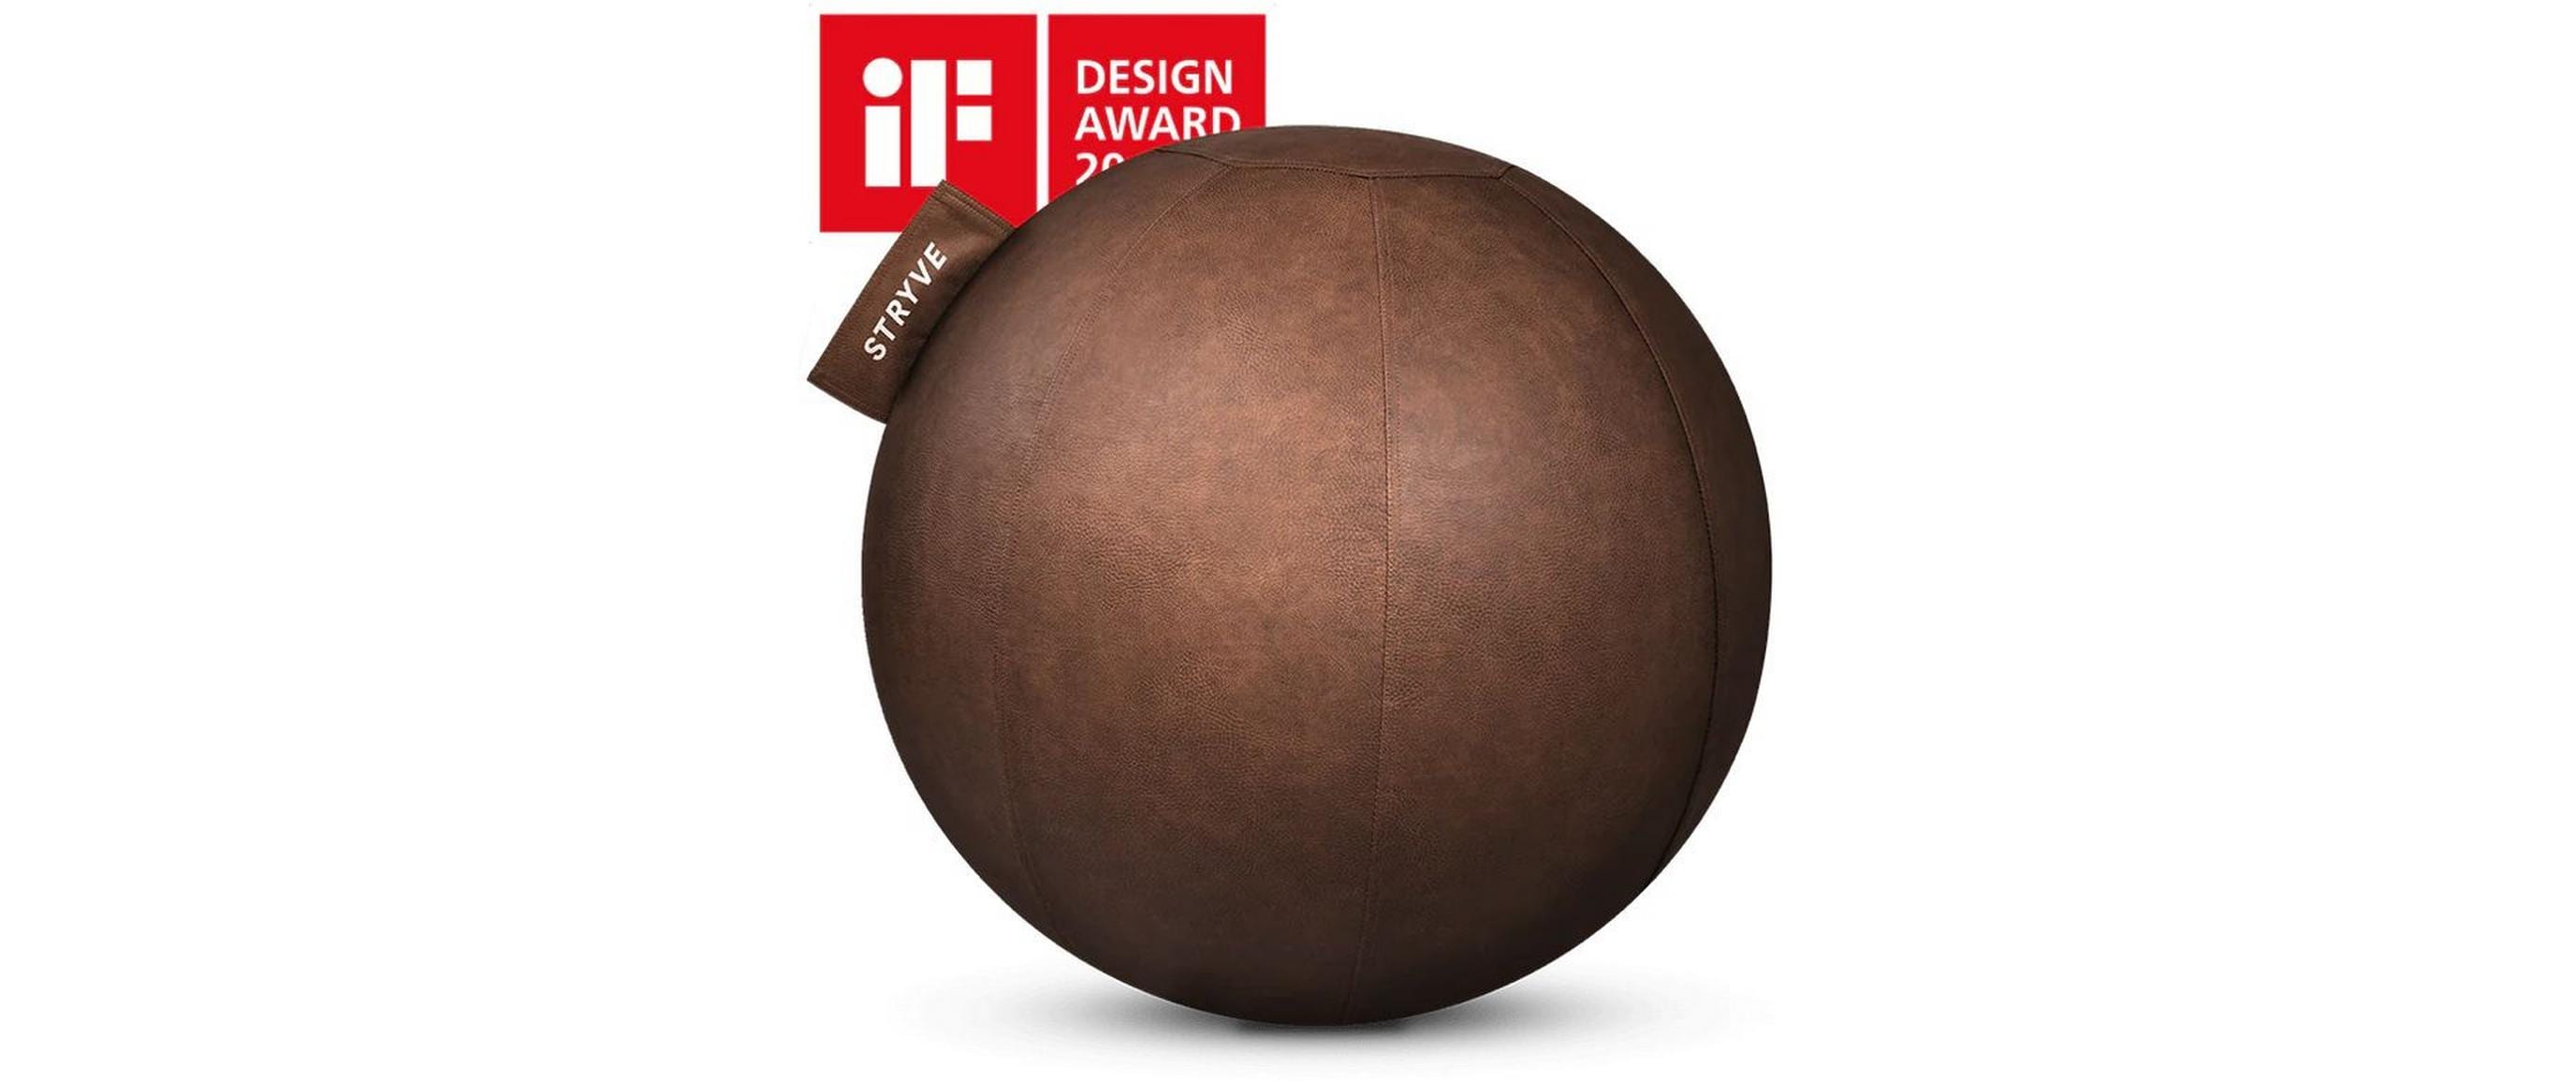 Stryve Active Ball Kunstleder Ø 65 cm